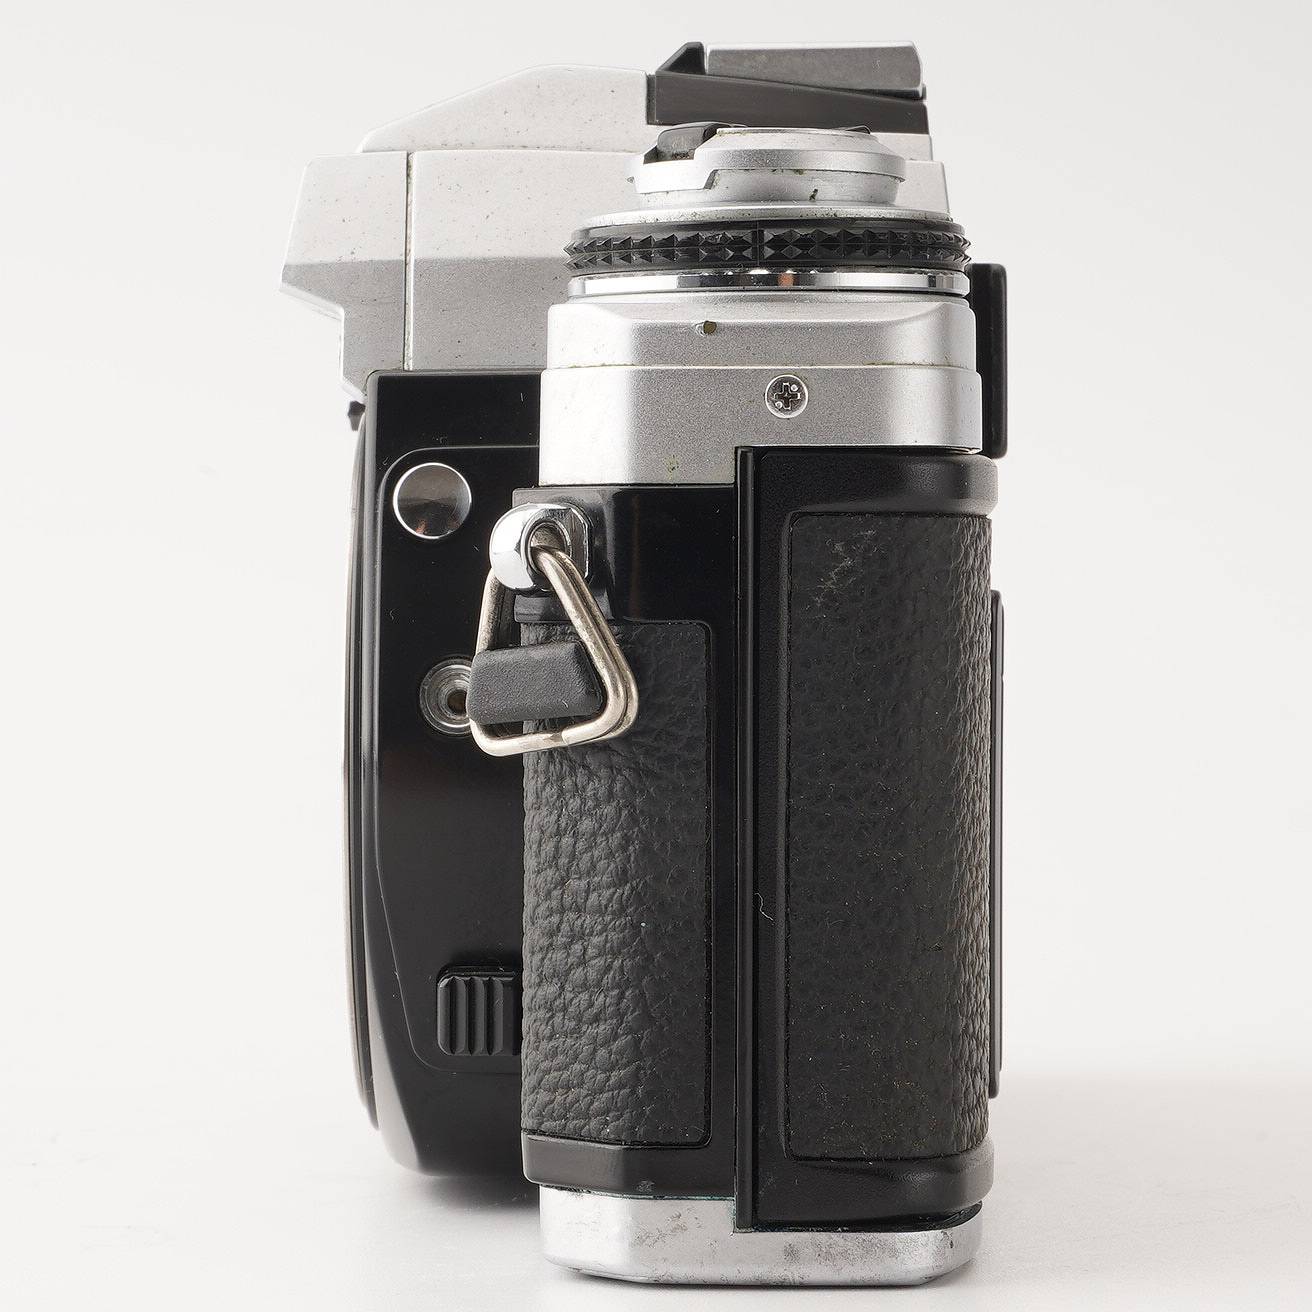 ミノルタ Minolta X-700 MPS / MD ZOOM 35-70mm F3.5 – Natural Camera / ナチュラルカメラ